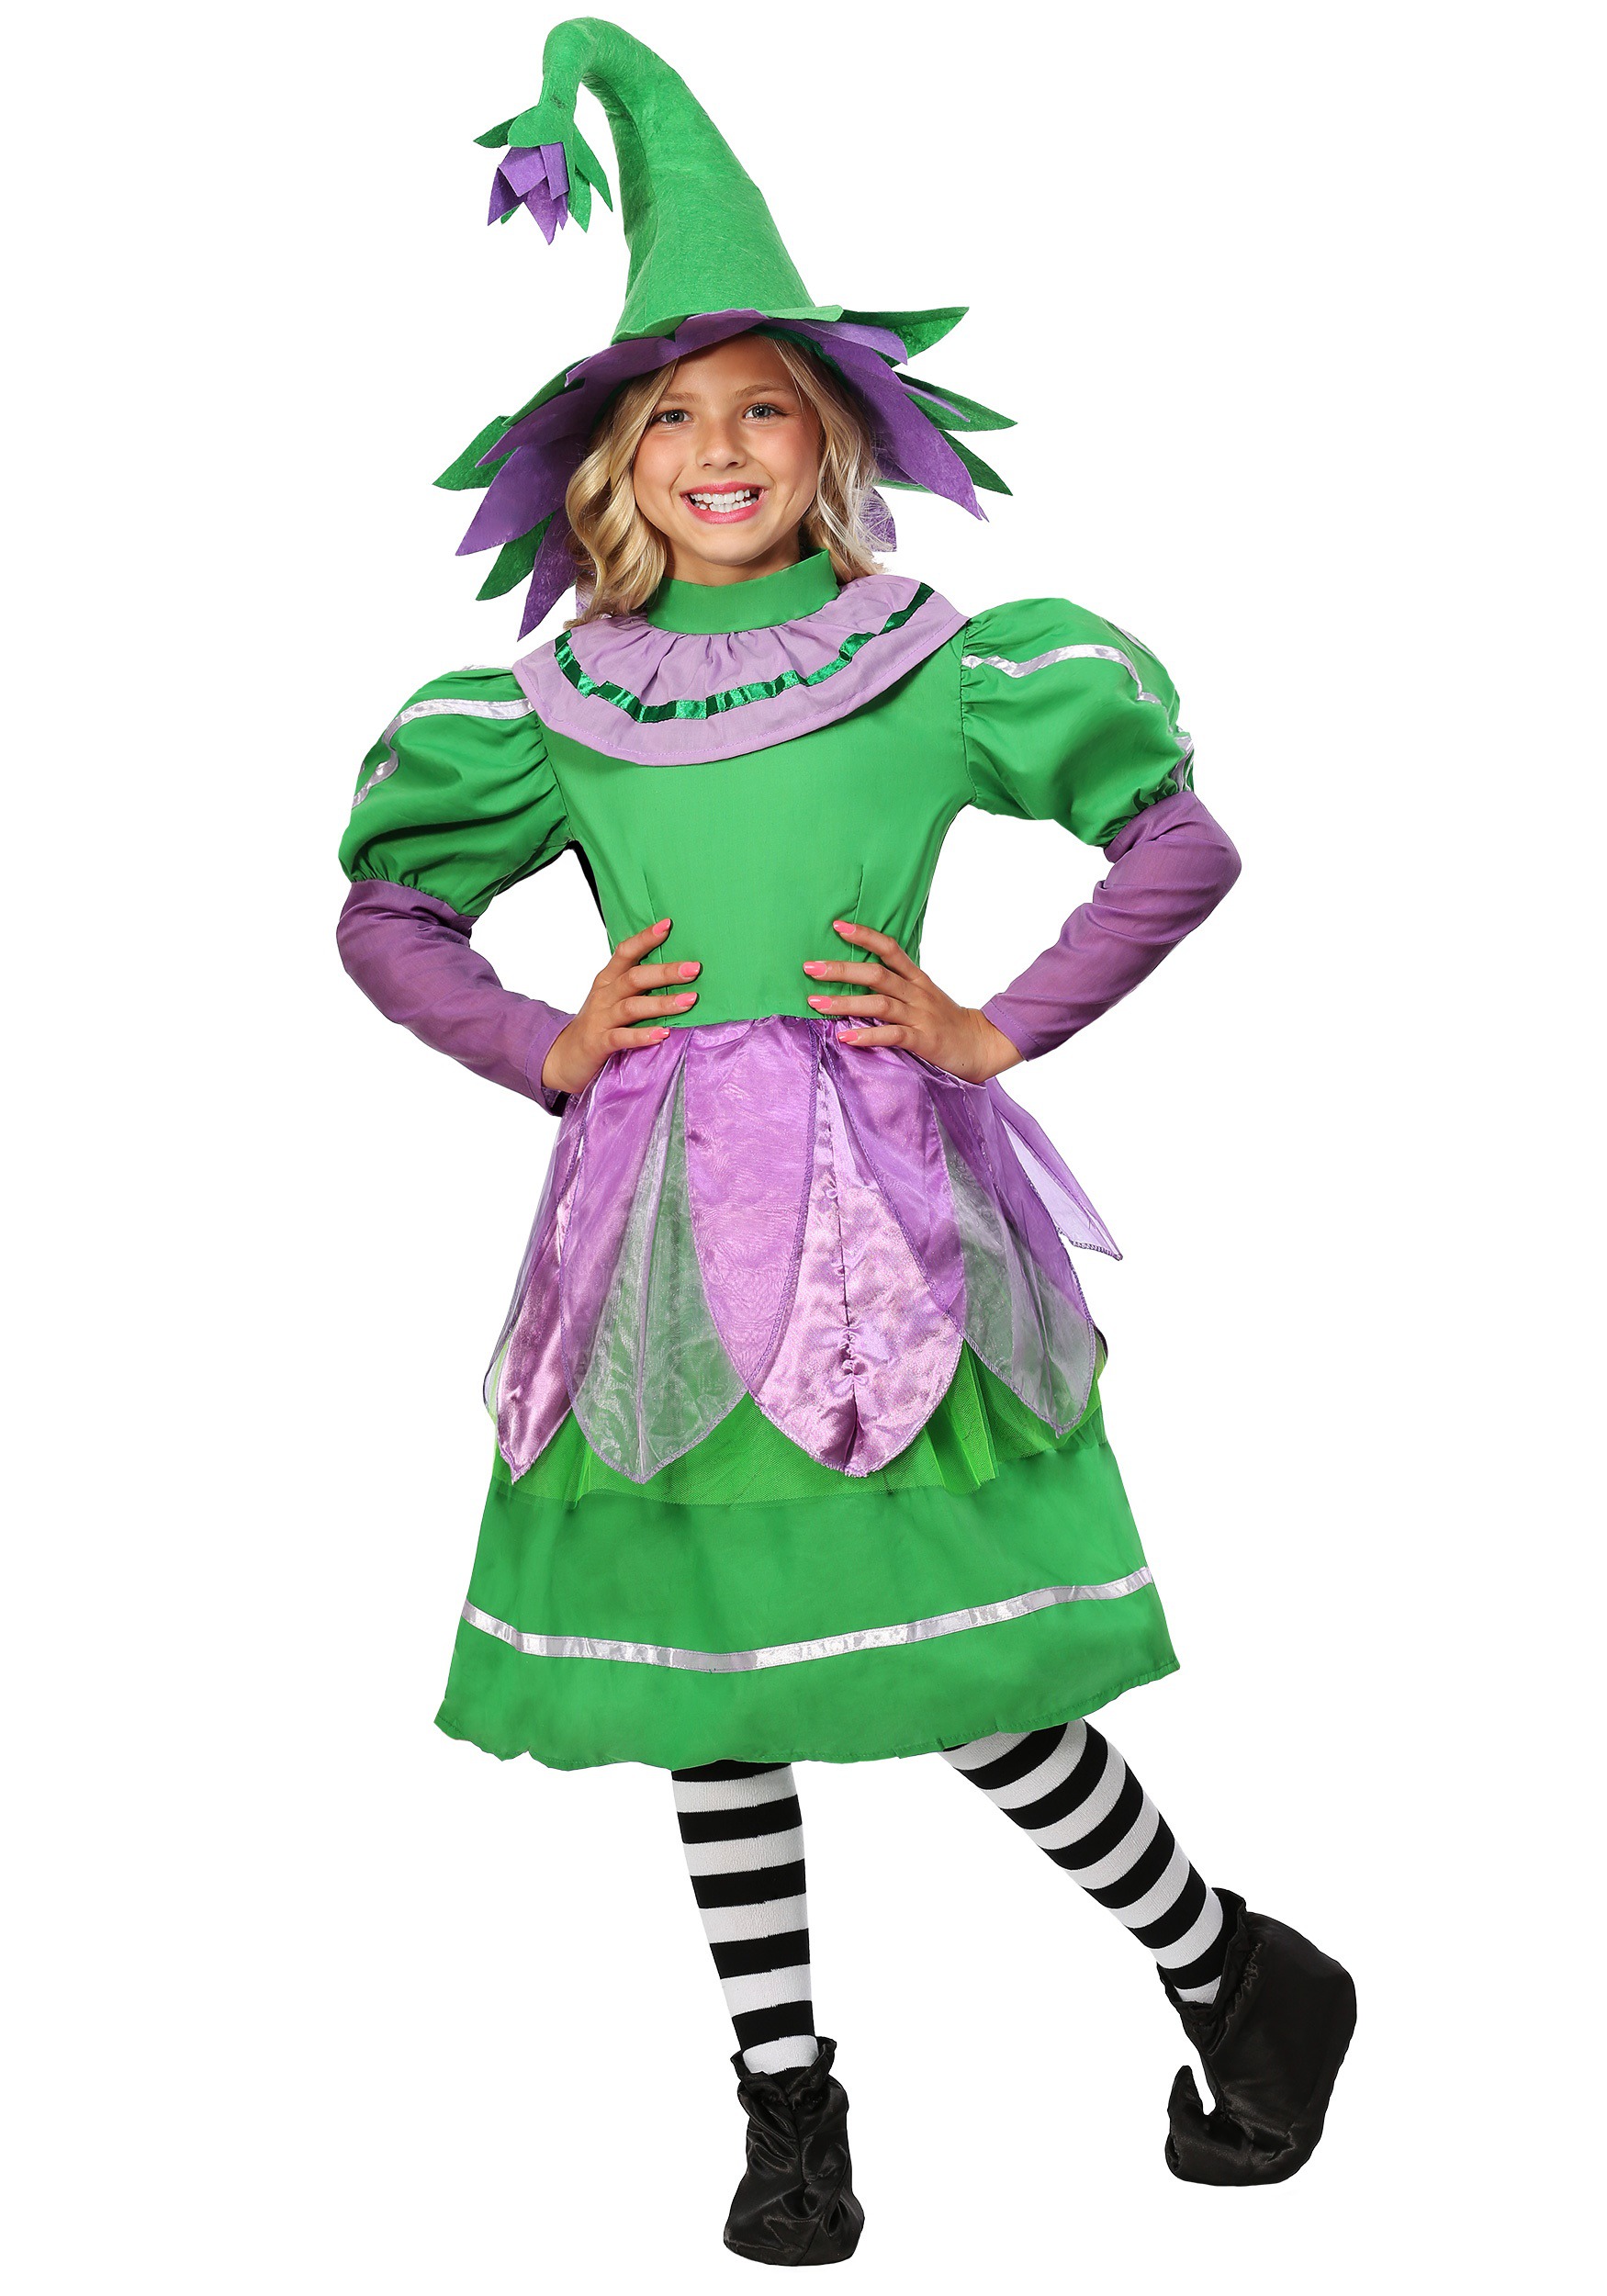 Photos - Fancy Dress Munchkin FUN Costumes  Girl Kids Costume Green/Purple FUN1013 